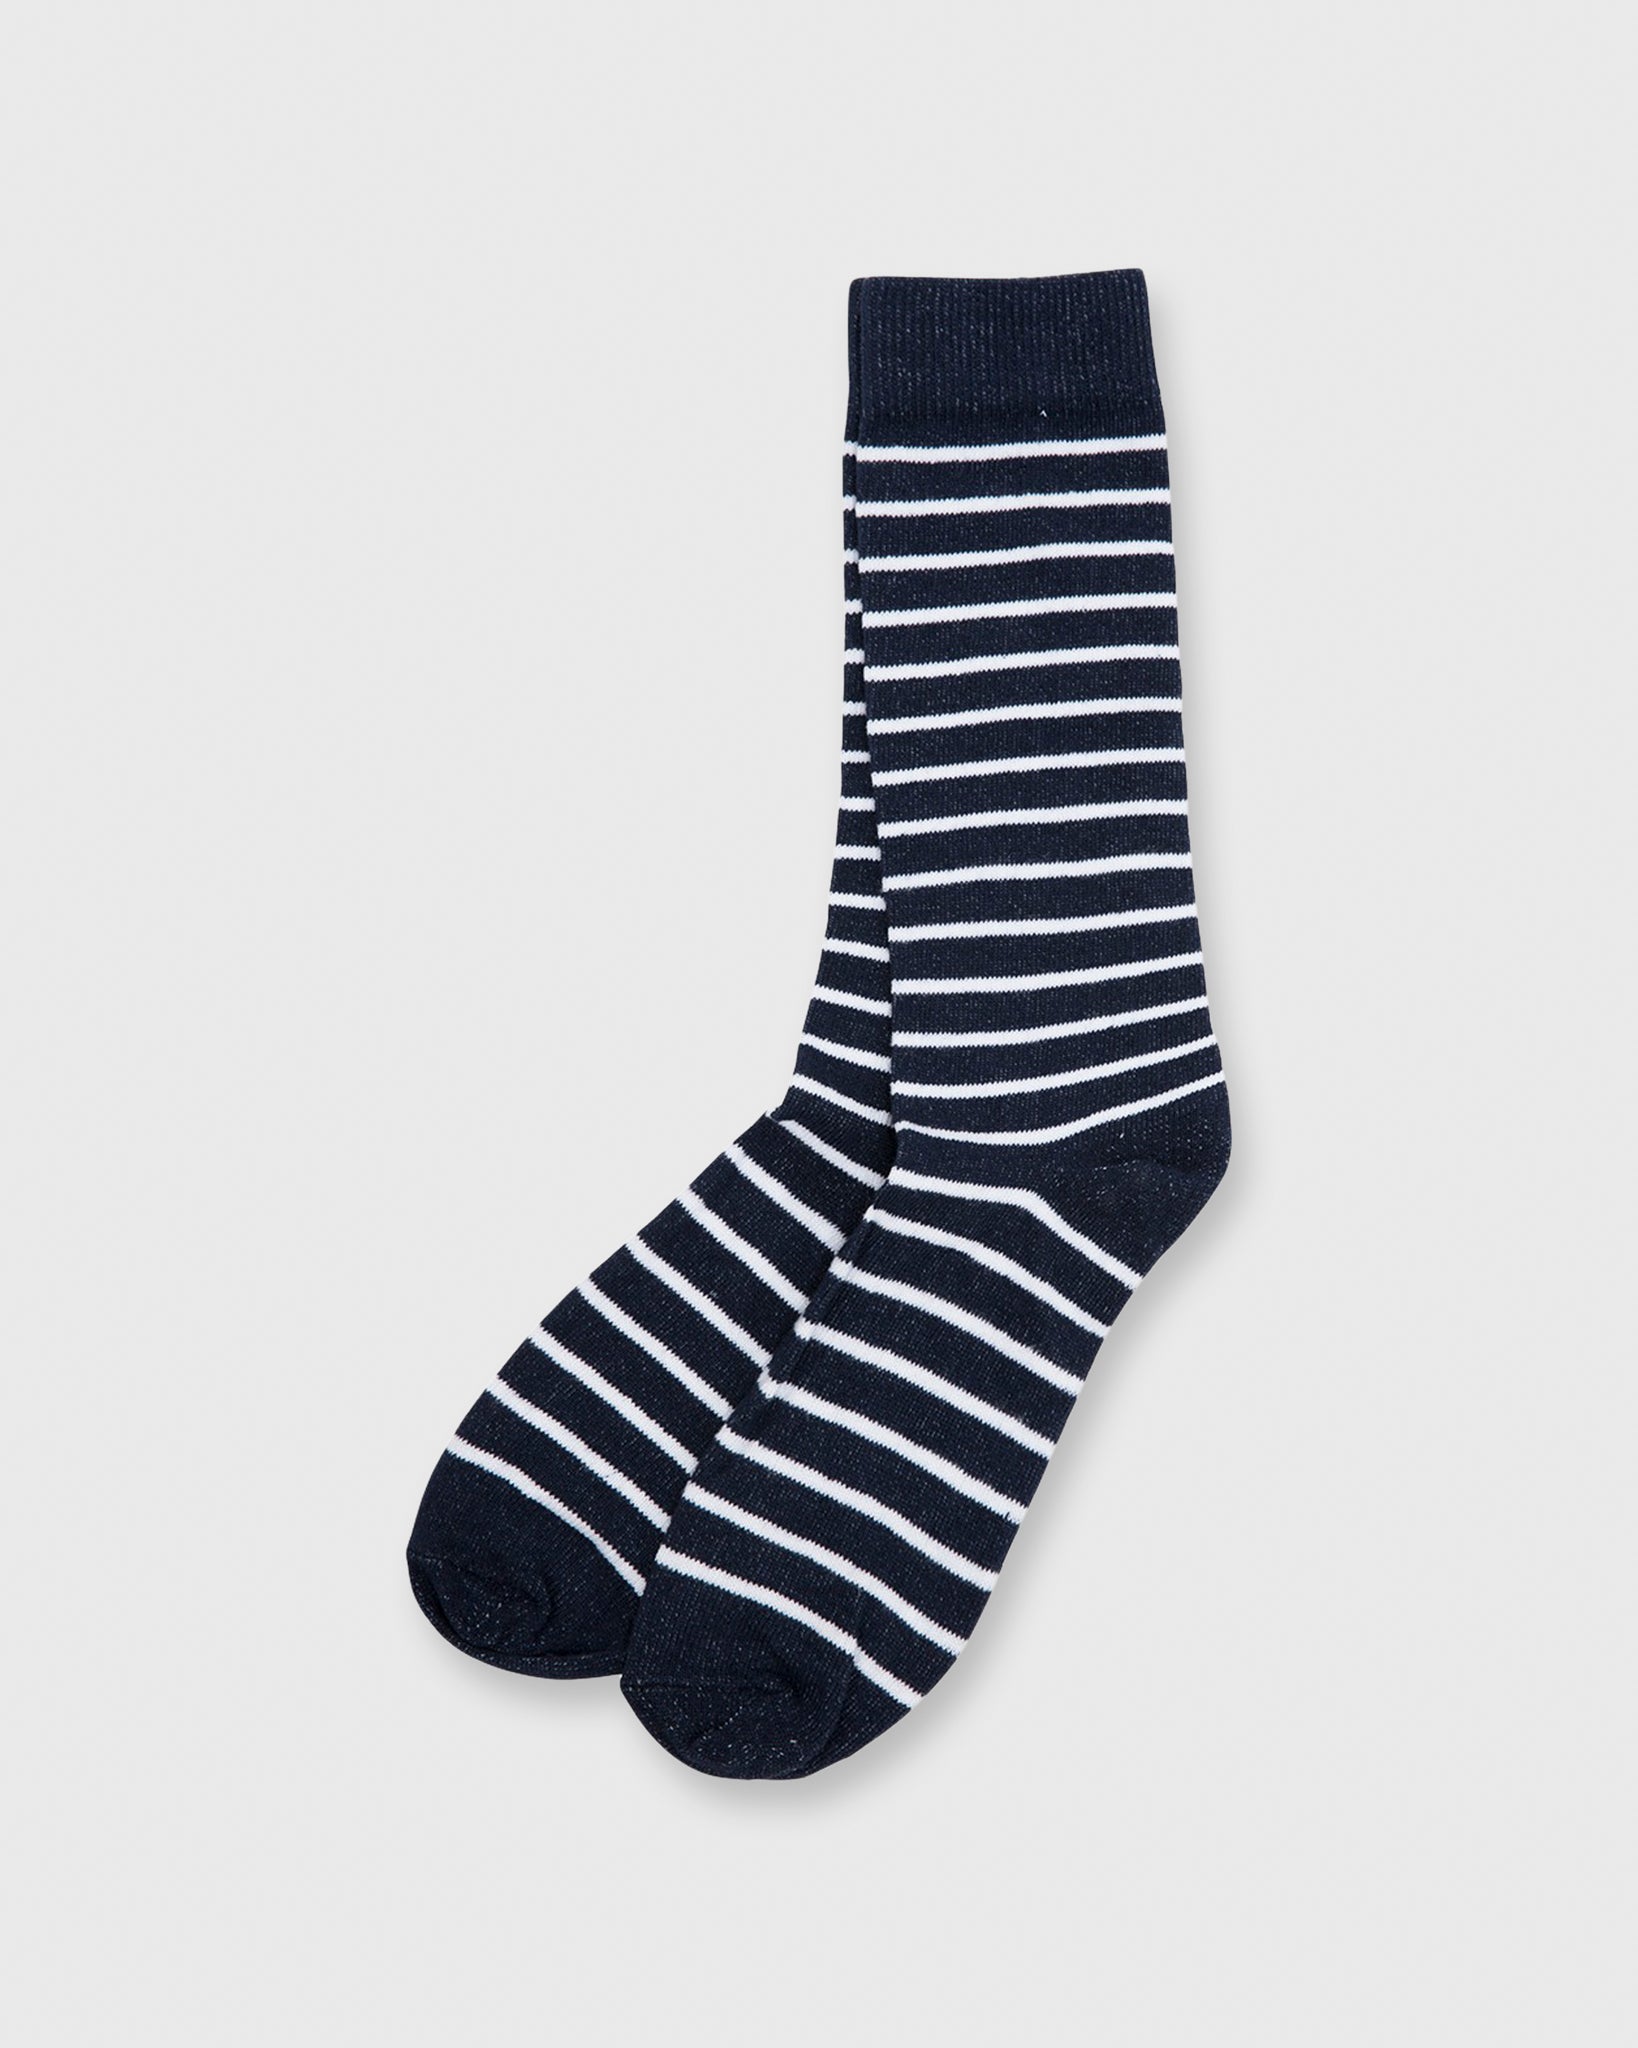 Classic Breton Stripe Socks in Navy/White